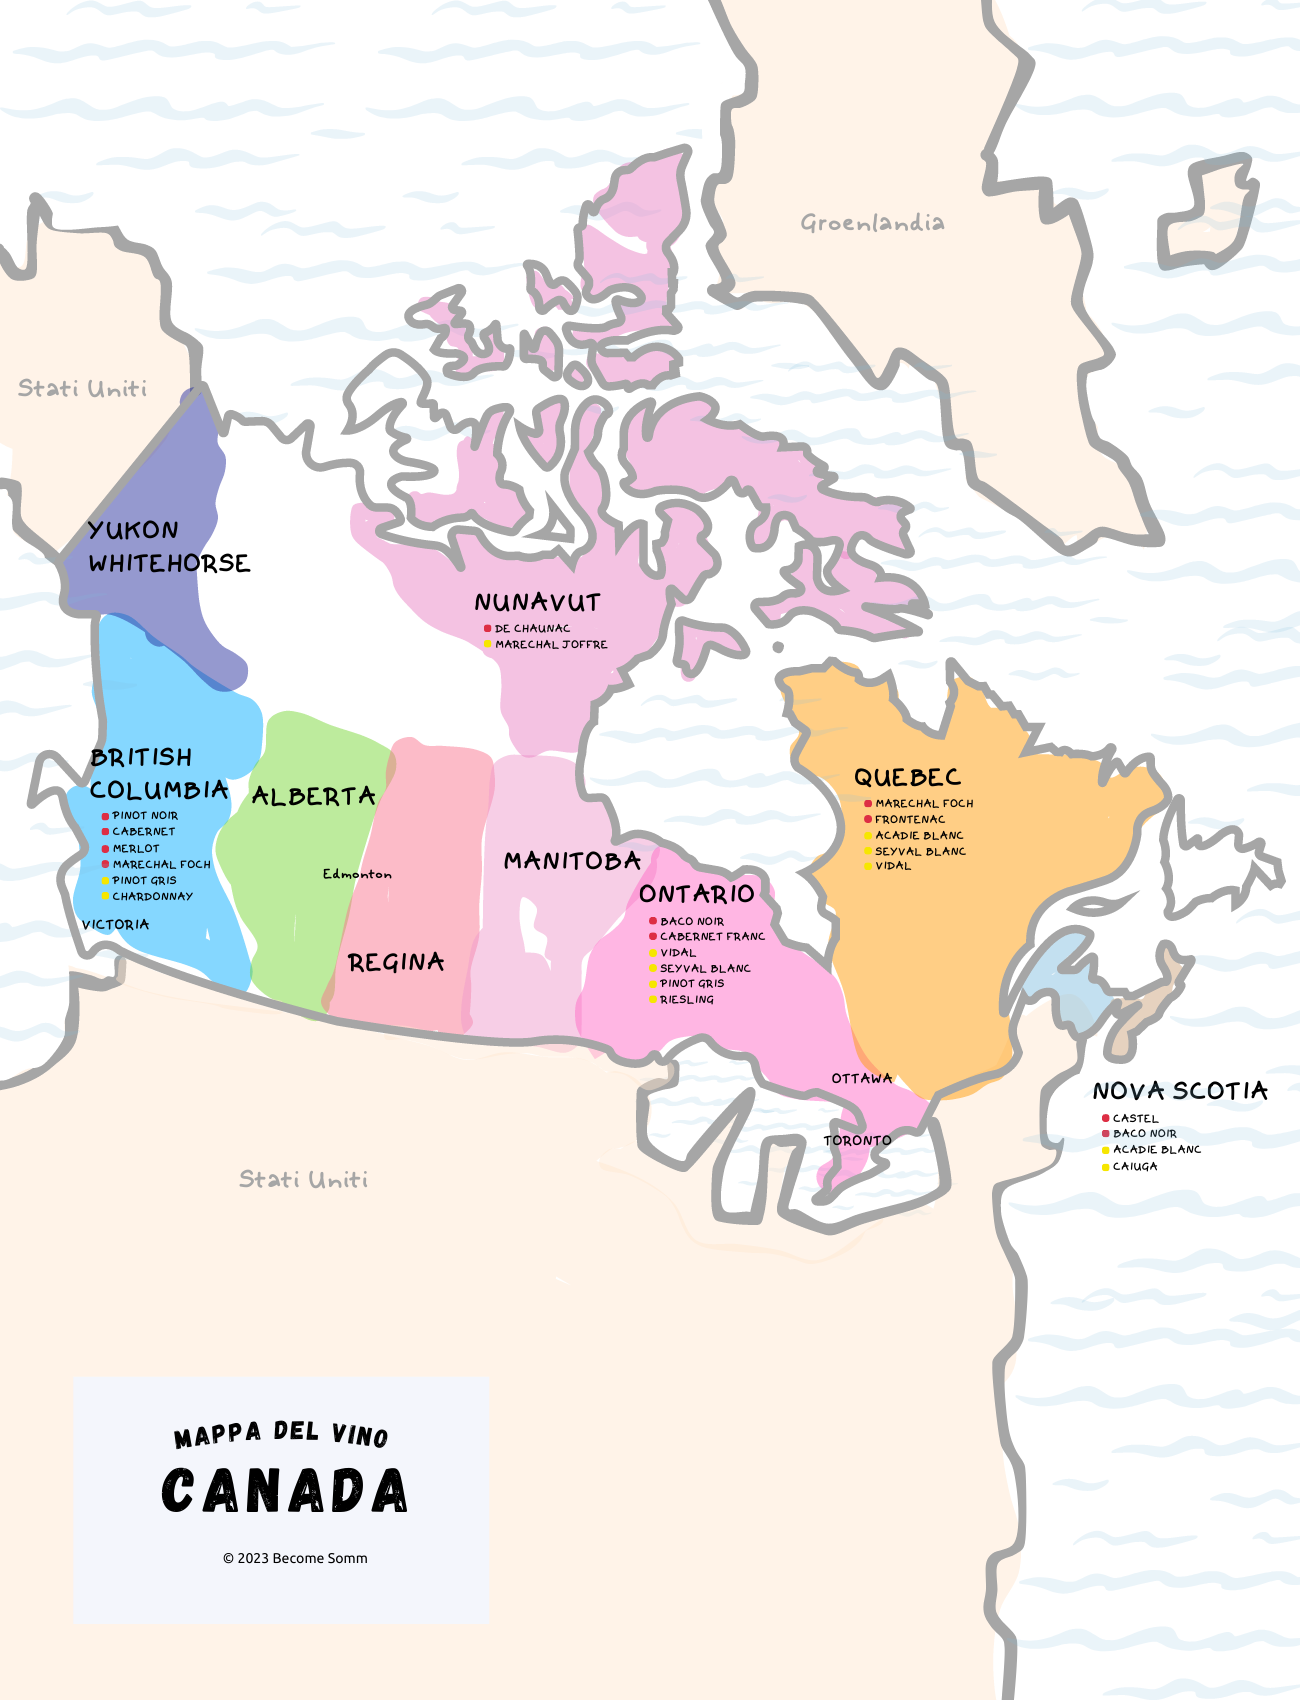 Wine Map Canada
Mappa del vino canada
Carte des vins de canada